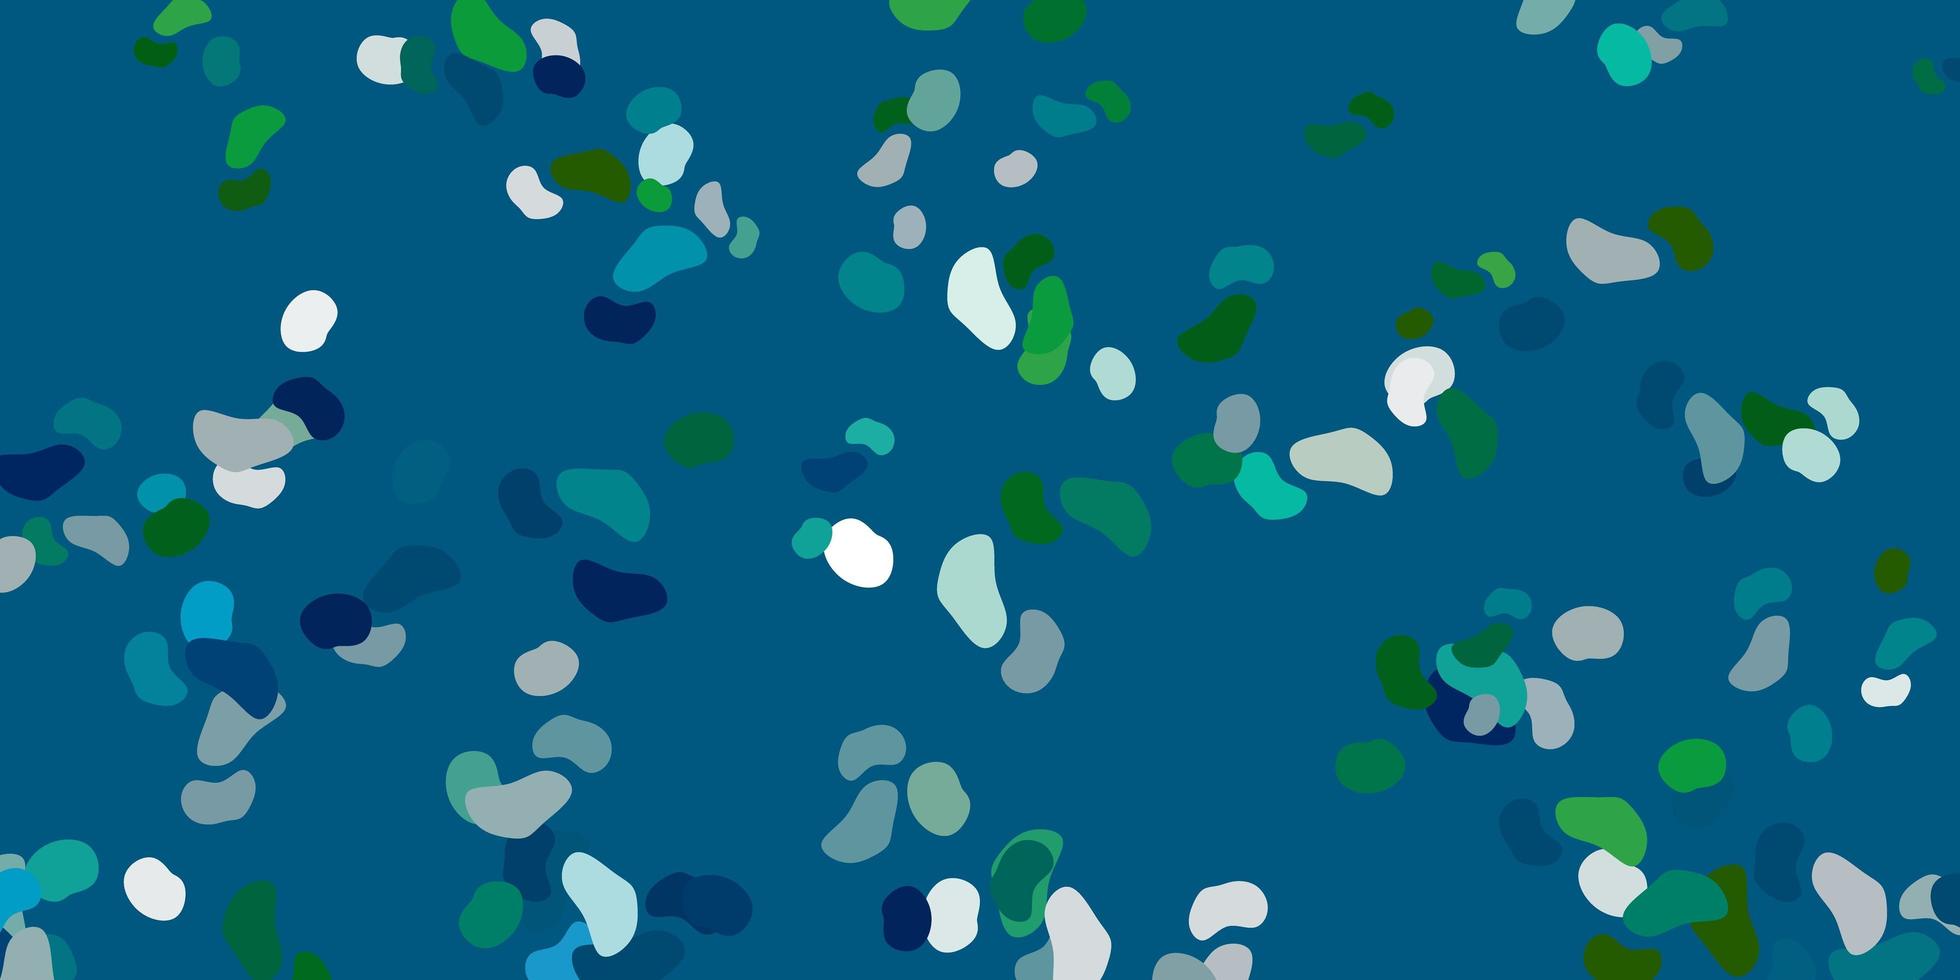 ljusblå, grön vektorbakgrund med slumpmässiga former. vektor